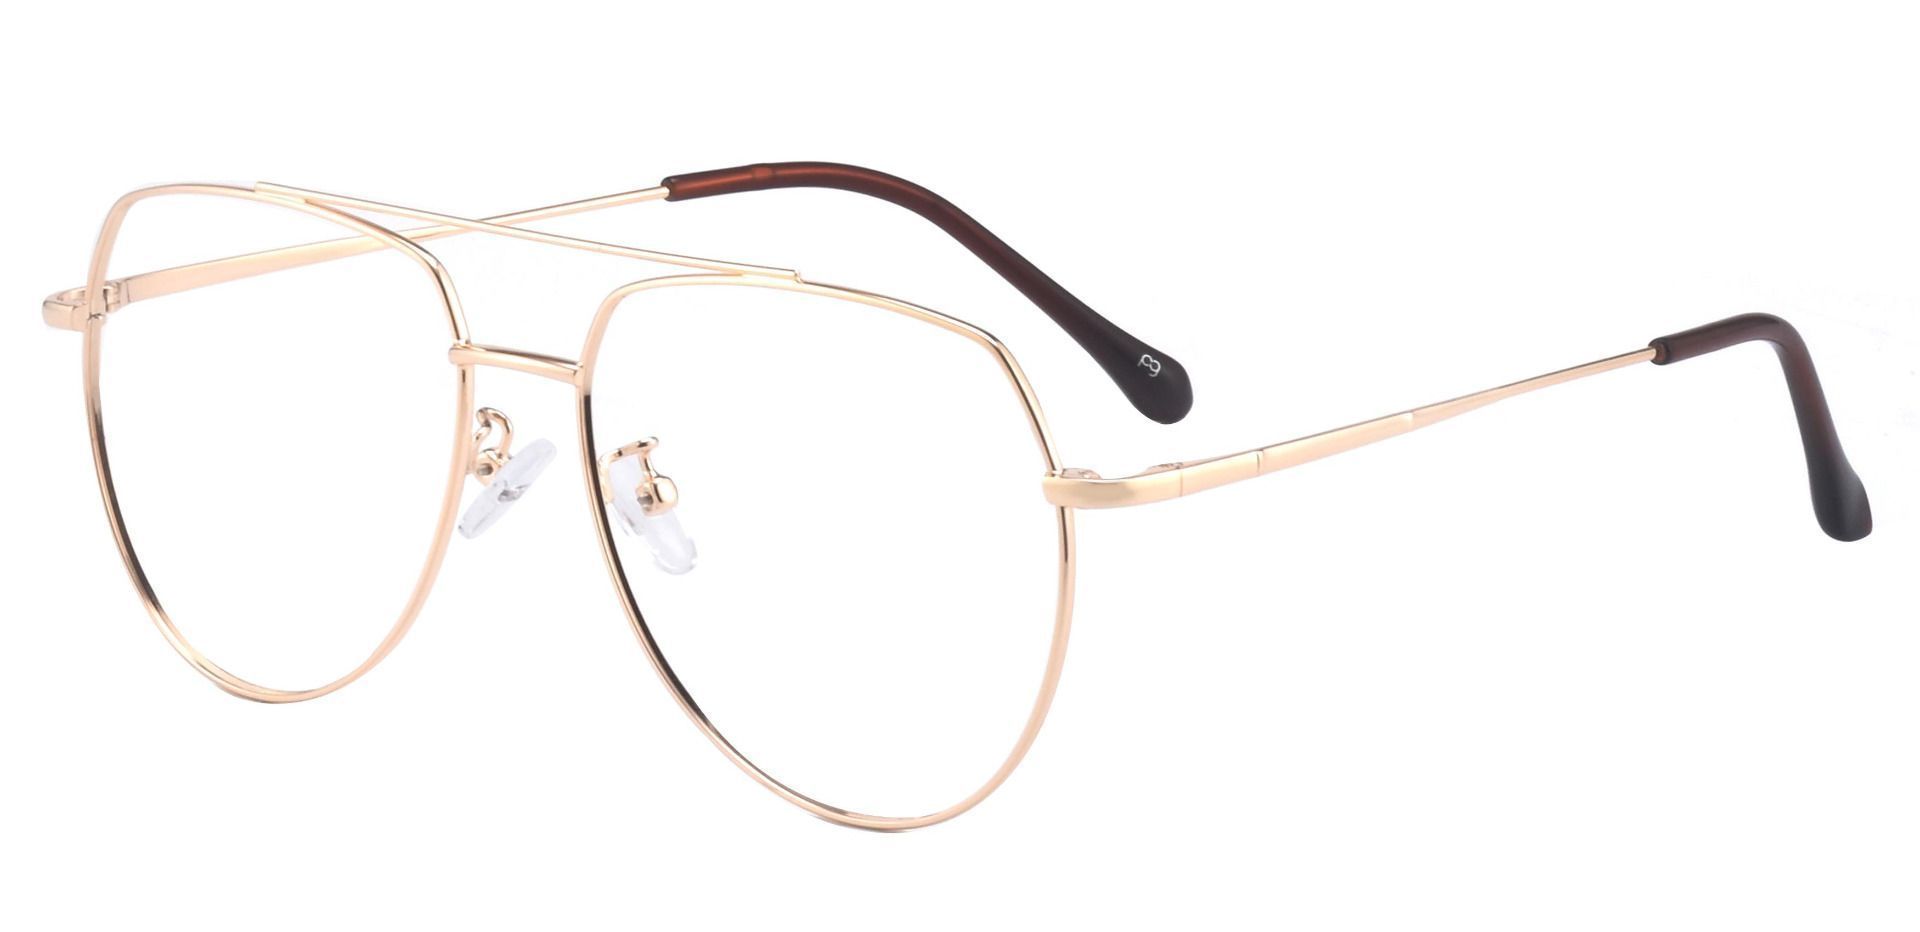 Genesis Aviator Prescription Glasses - Gold | Women's Eyeglasses ...